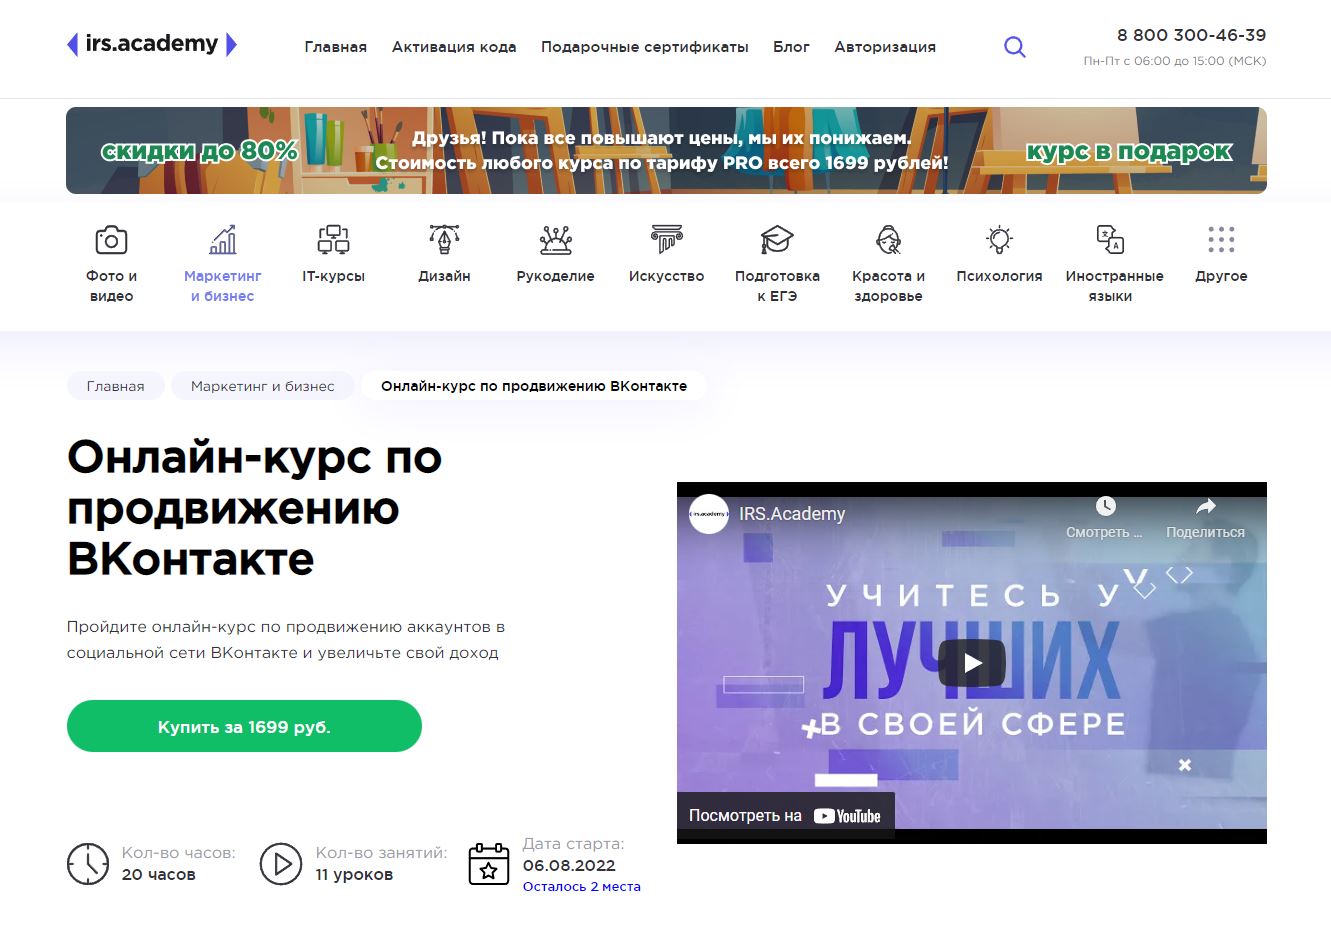 ТОП-10 онлайн-курсов по таргетированной рекламе во Вконтакте 2022 - IRSAcademy. «Онлайн-курс по продвижению ВКонтакте» - фото